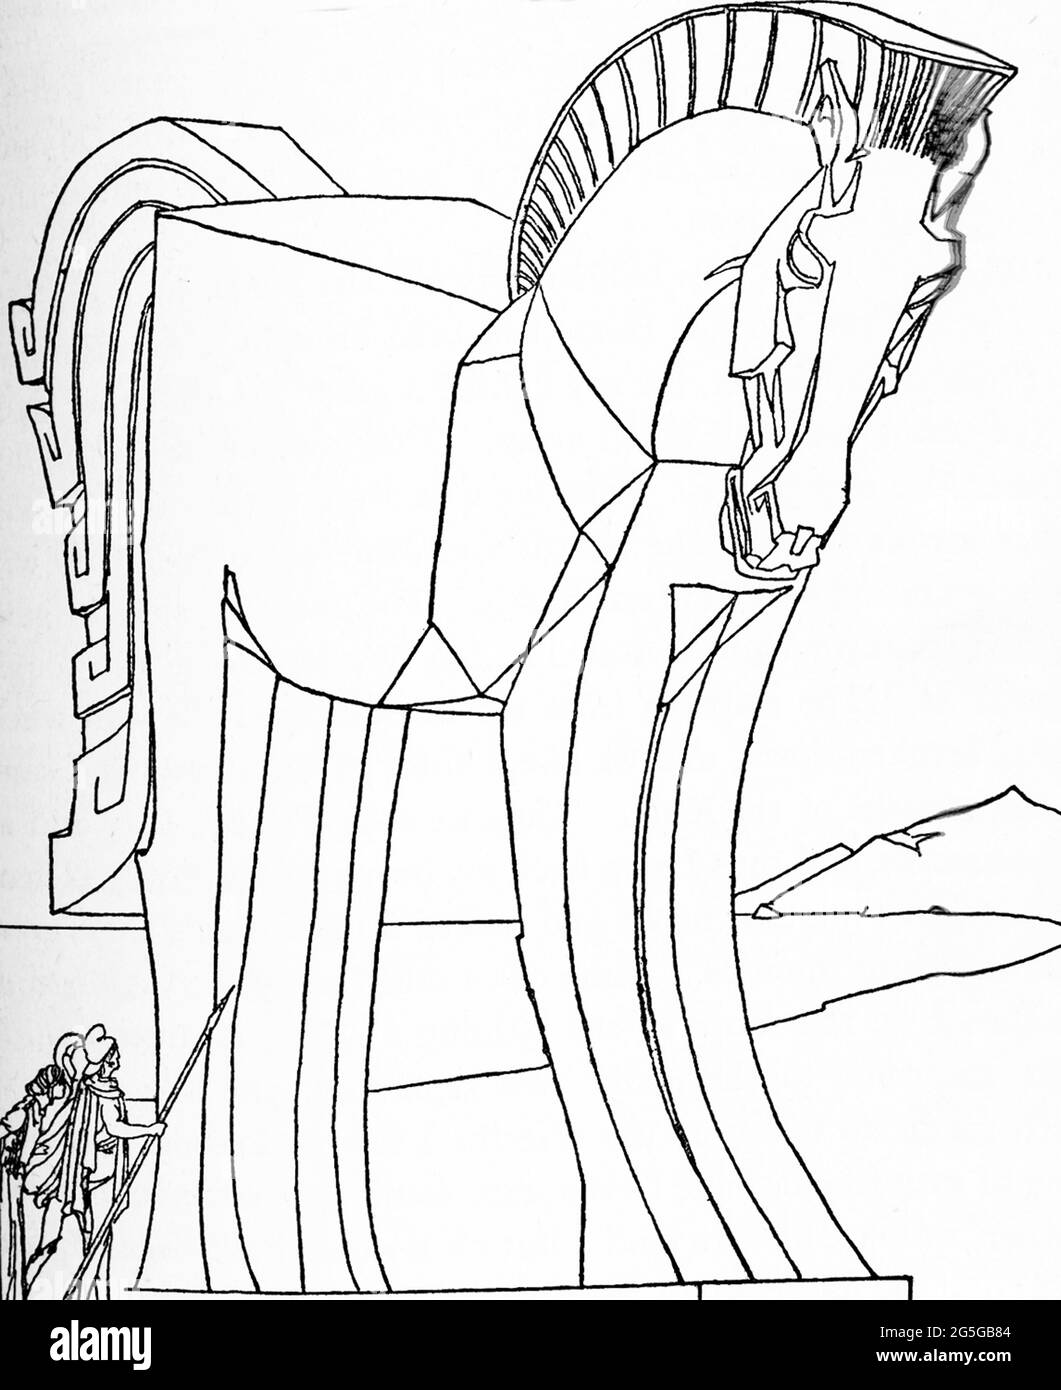 Der griechischen und römischen Mythologie zufolge warnte der Trojanische Laokoon seine Mittrojaner davor, das riesige Holzpferd (hier zu sehen), das ihnen von den Griechen geschenkt wurde, in die Mauern des Troys zu bringen. Poseidon, der gott des Meeres und eine Gottheit, die die Griechen begünstigte, sandte Seeschlangen vom Meer, um Laocoon zu erwürgen. Das Pferd war die Idee des griechischen Helden Odysseus, und die Griechen ließen einen Griechen namens Sinon den Trojanern sagen, dass, wenn die Trojaner es nicht innerhalb der Stadtmauern brachten, die Griechen die Trojaner besiegen würden. Diese Illustration aus dem frühen 20. Jahrhundert zeigt die Trojaner, die in dem Gedanken schwelgen, dass es beim Pferd um das Thema ging Stockfoto